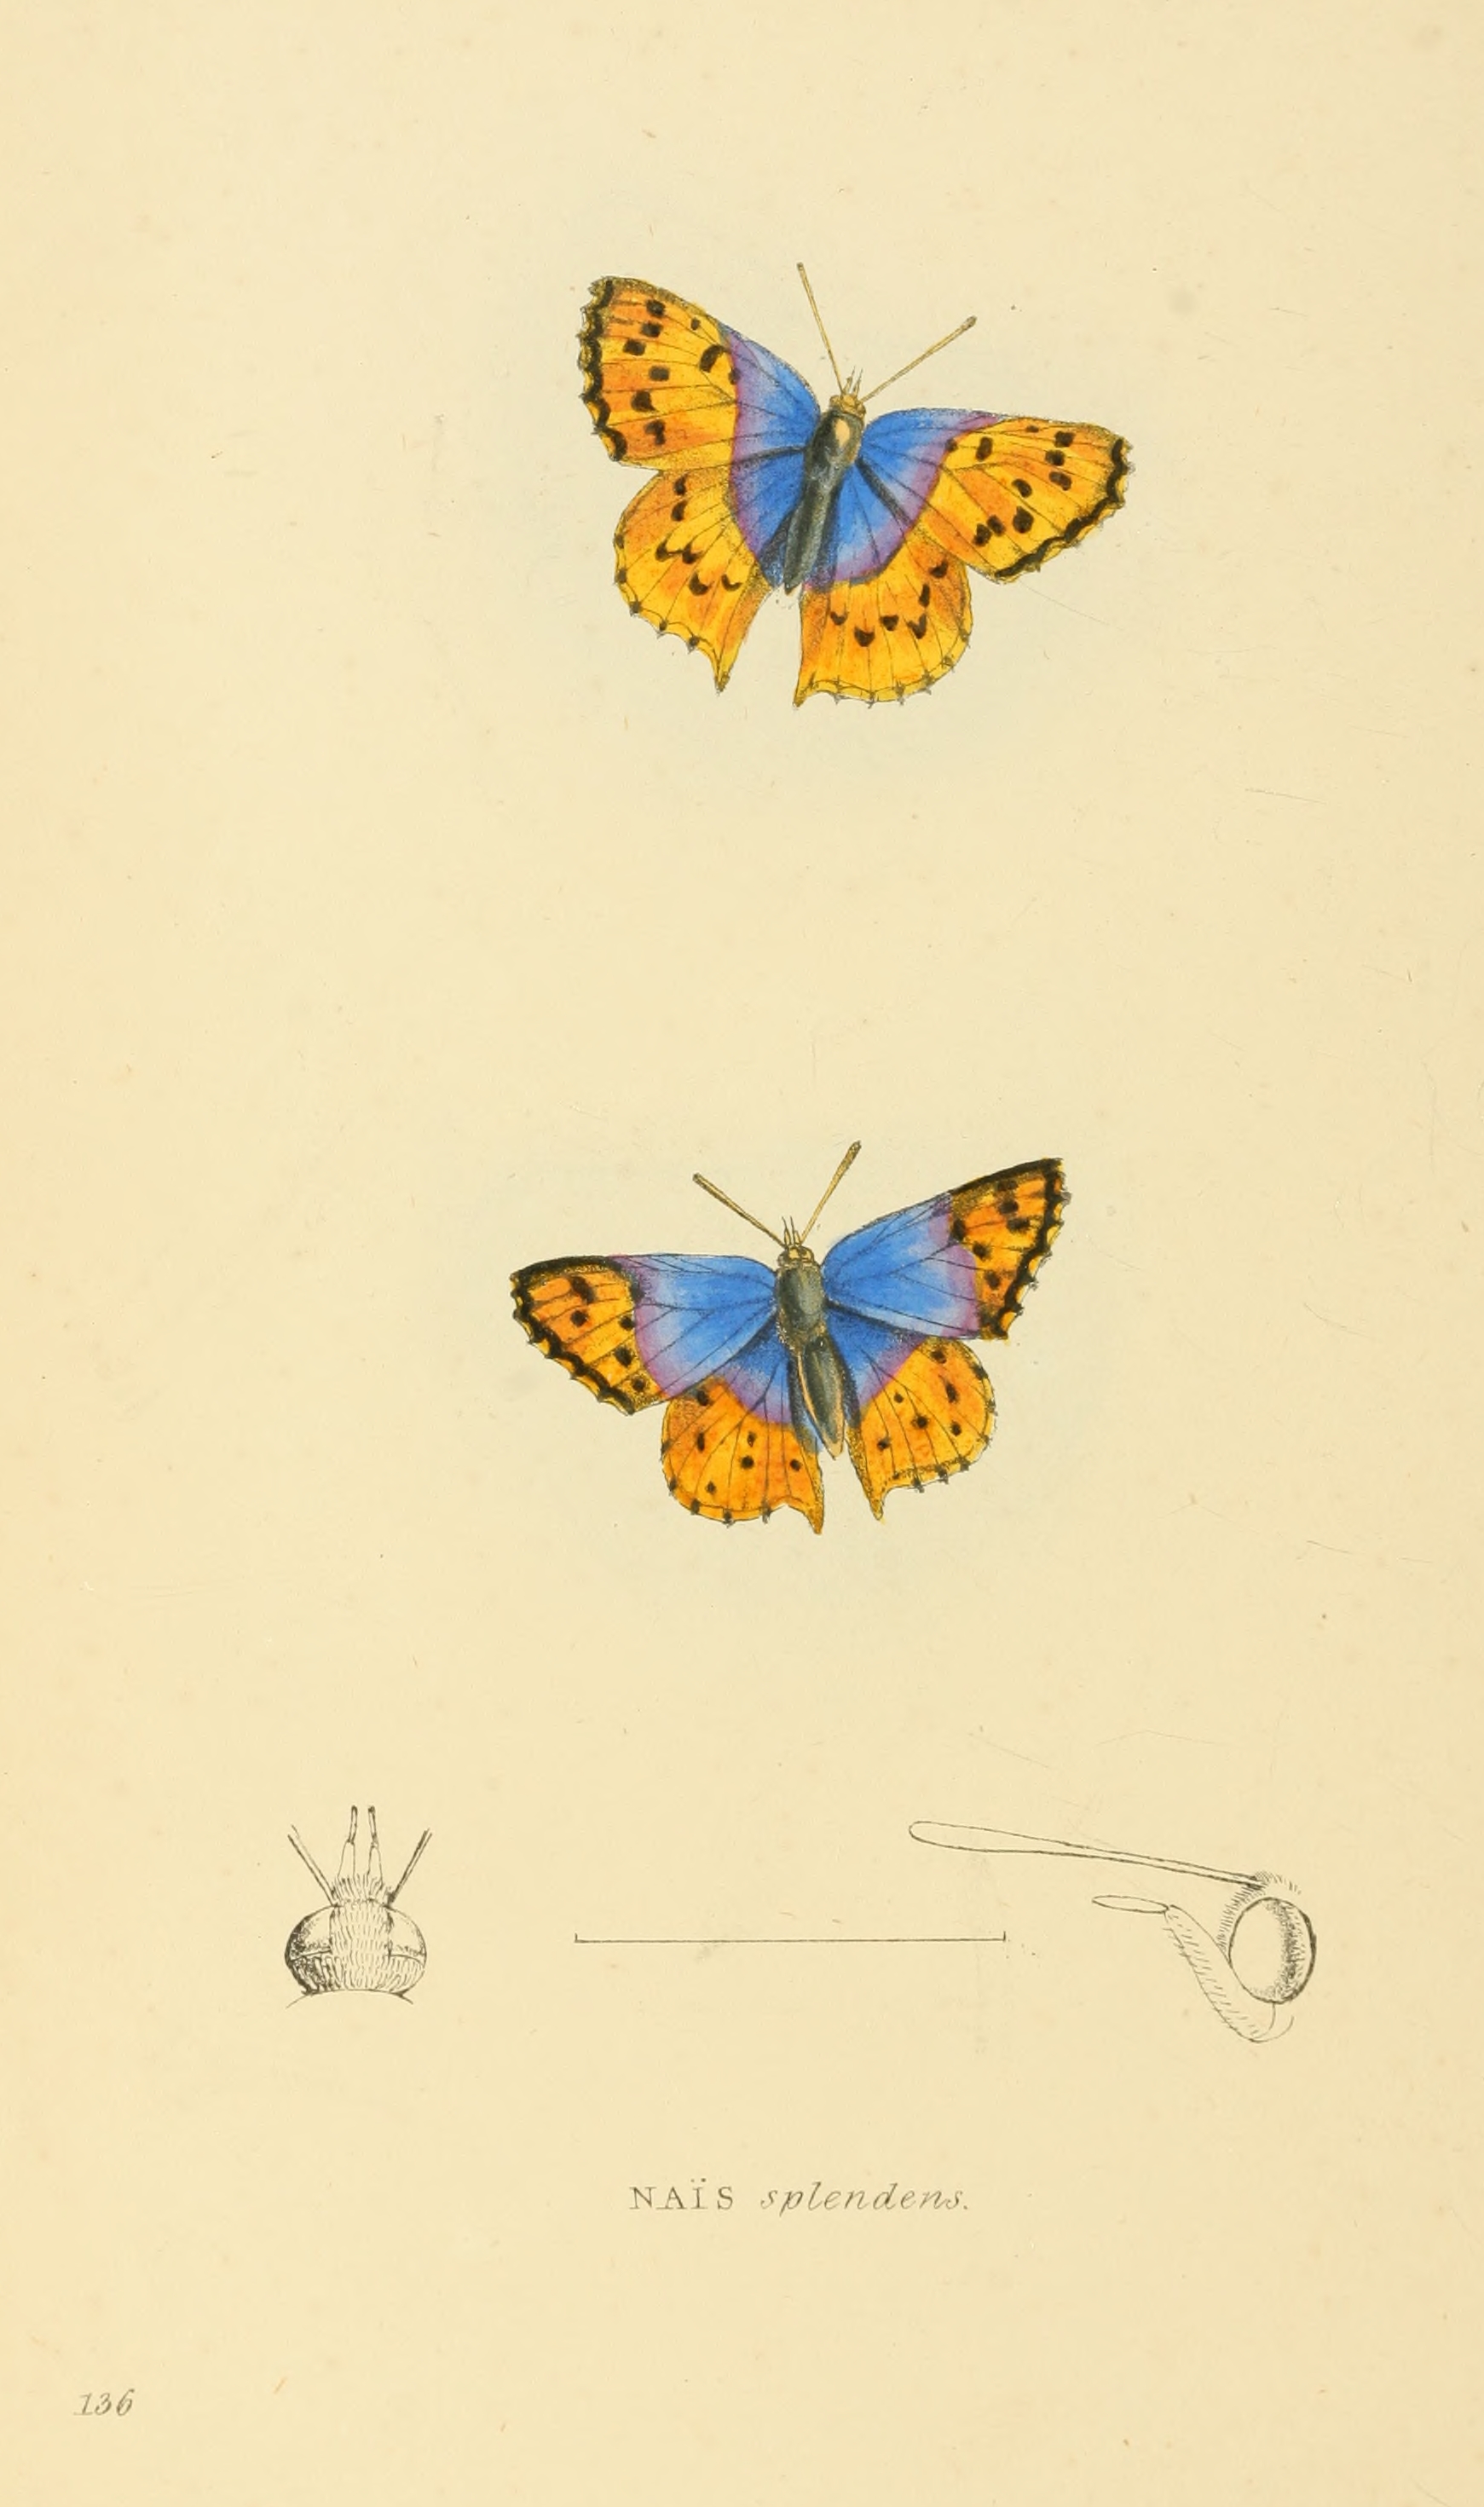 Zoological Illustrations Volume III Series 2 136